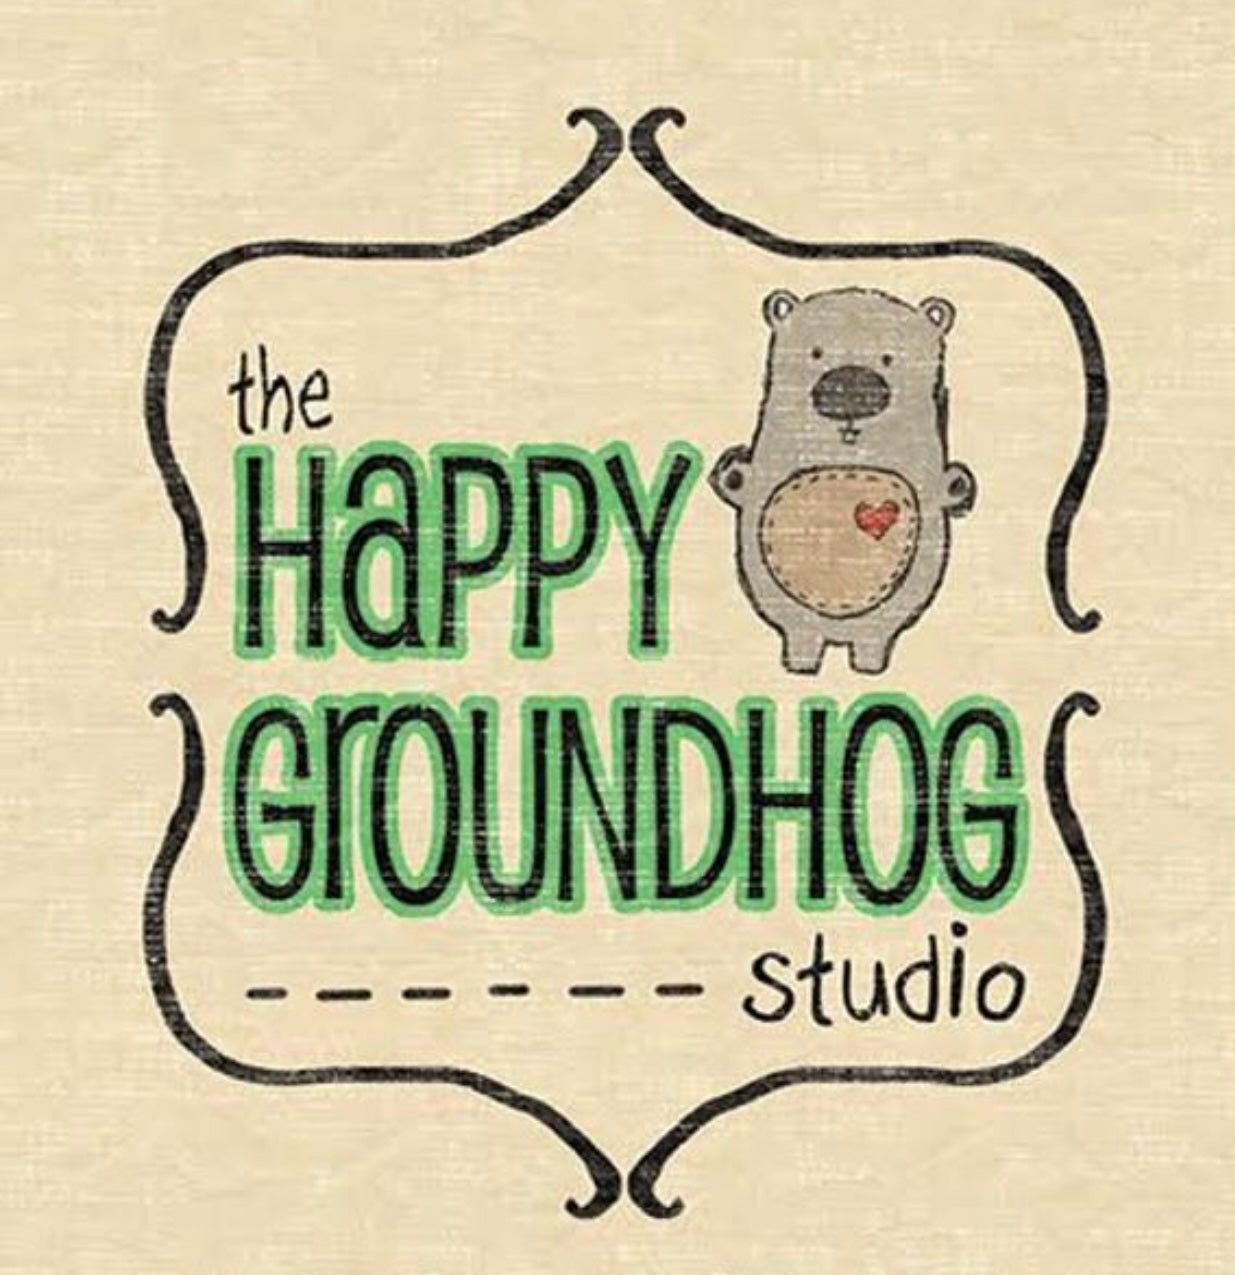 The Happy Groundhog Studio